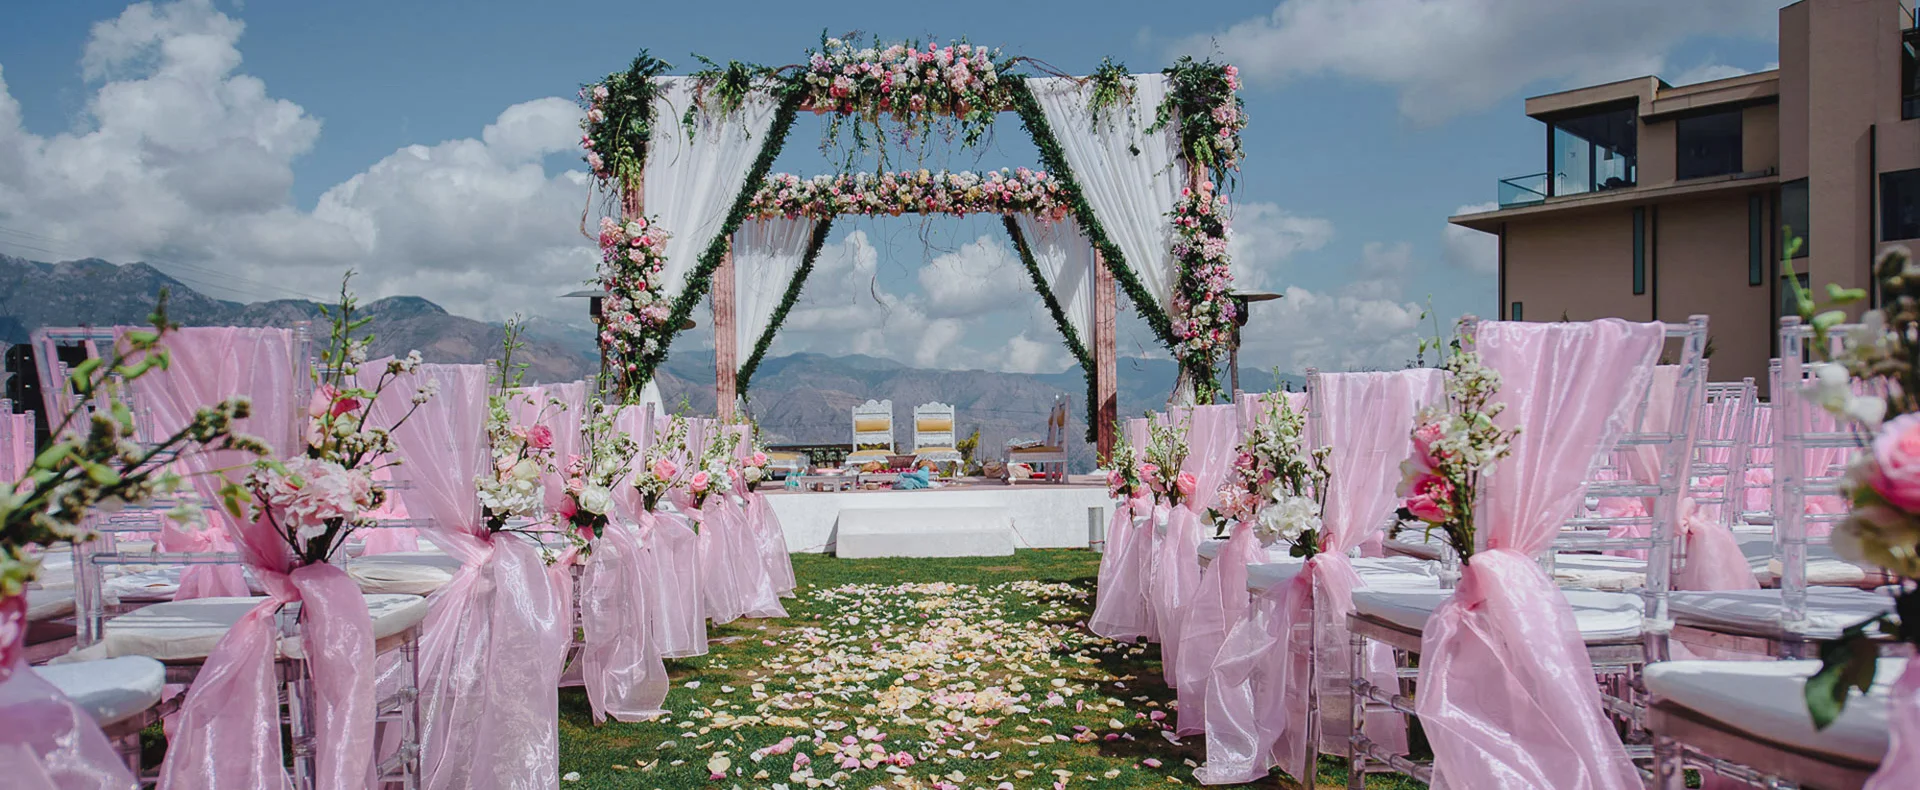 Destination Wedding in Mussoorie – Best Wedding Venue in Mussoorie